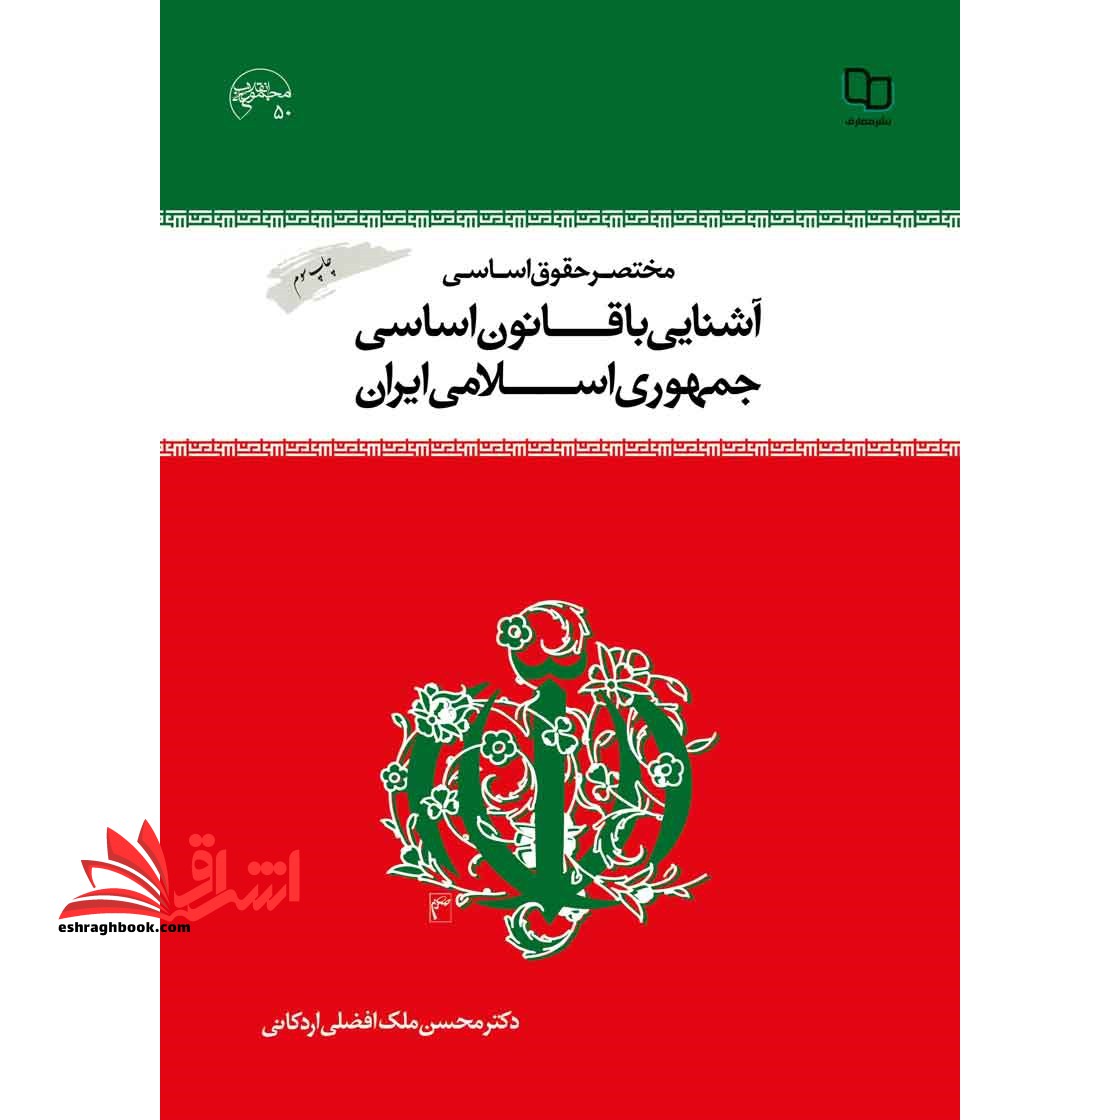 مختصر حقوق اساسی و آشنایی با قانون اساسی جمهوری اسلامی ایران